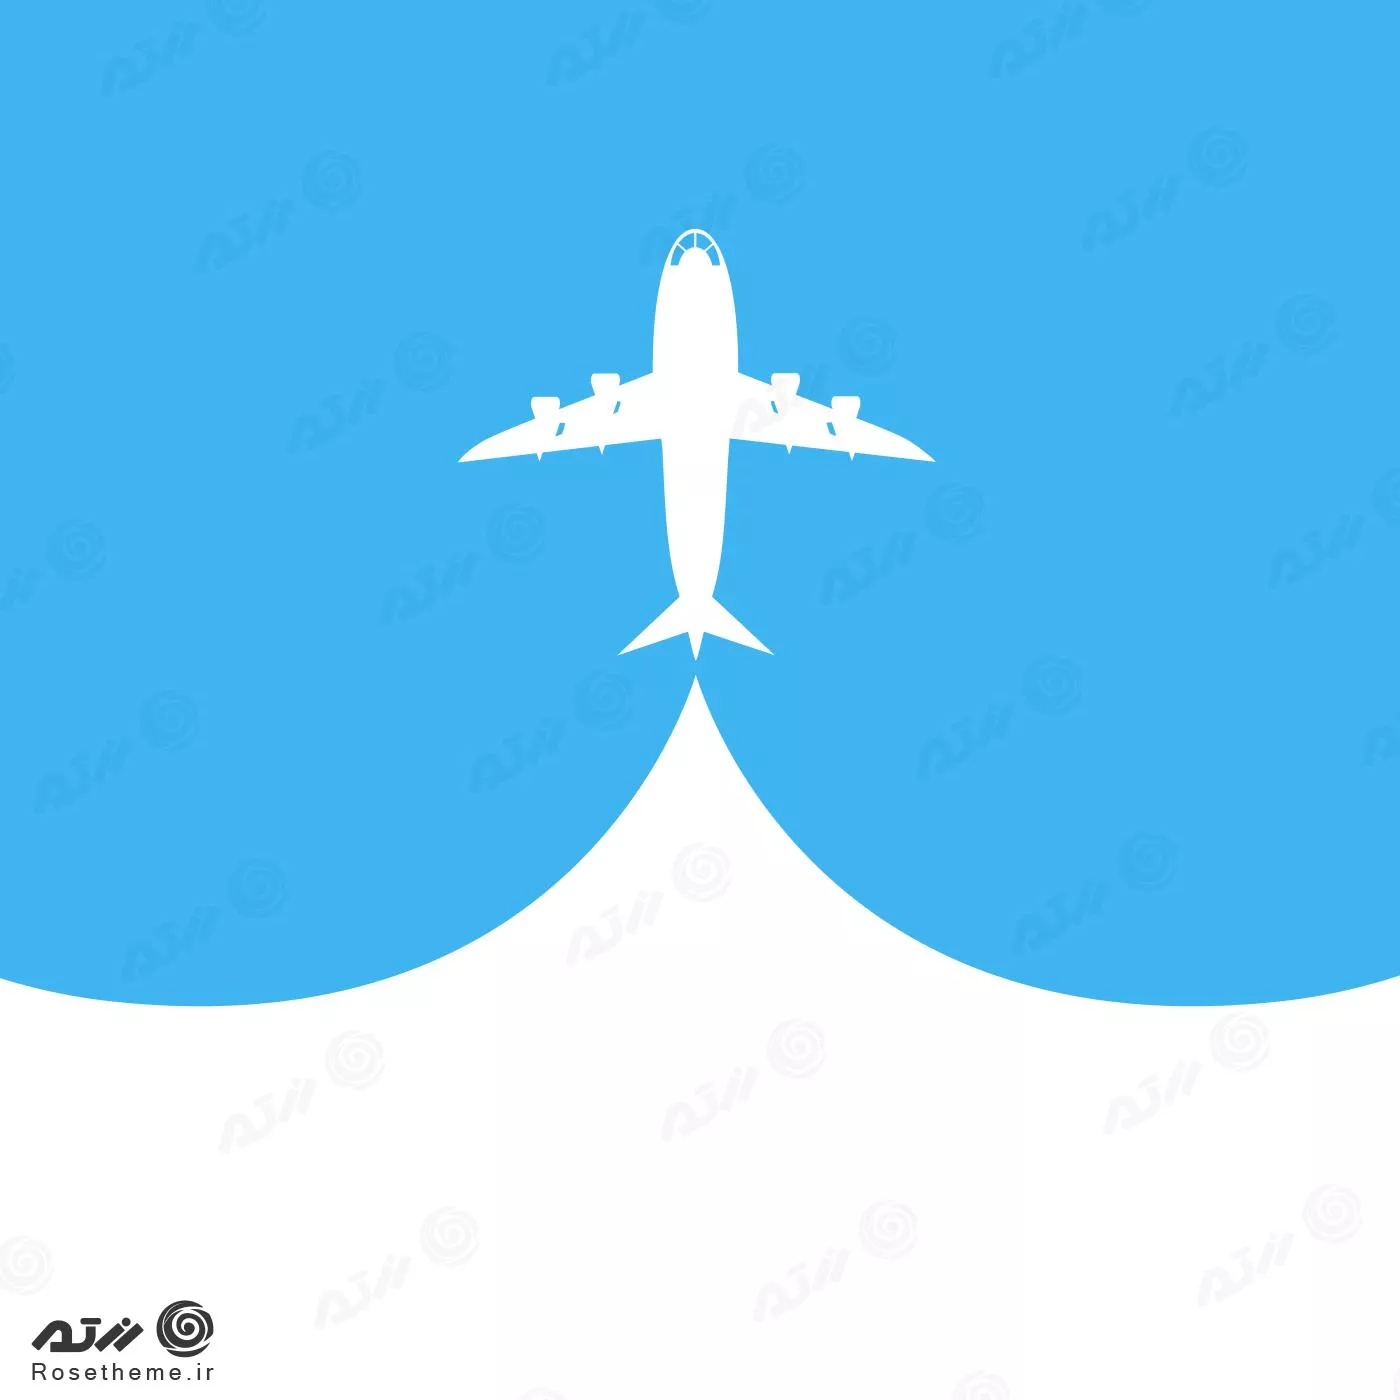 وکتور EPS لایه باز طرح گرافیکی هواپیما در آسمان با تم سفید و آبی 21978